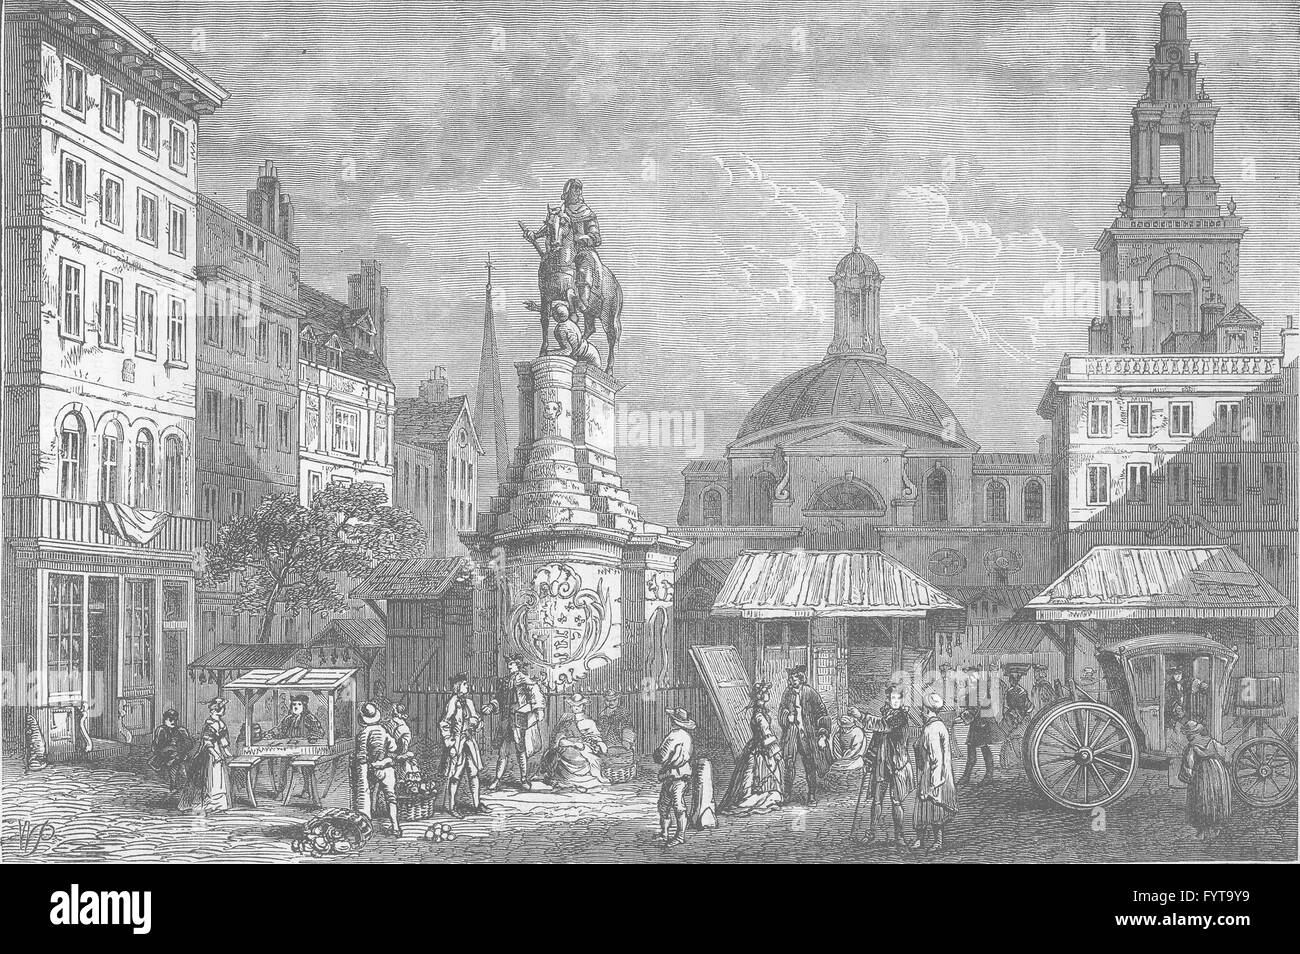 Città di Londra: le scorte sul mercato", sito del Mansion House Stampa vecchia c1880 Foto Stock